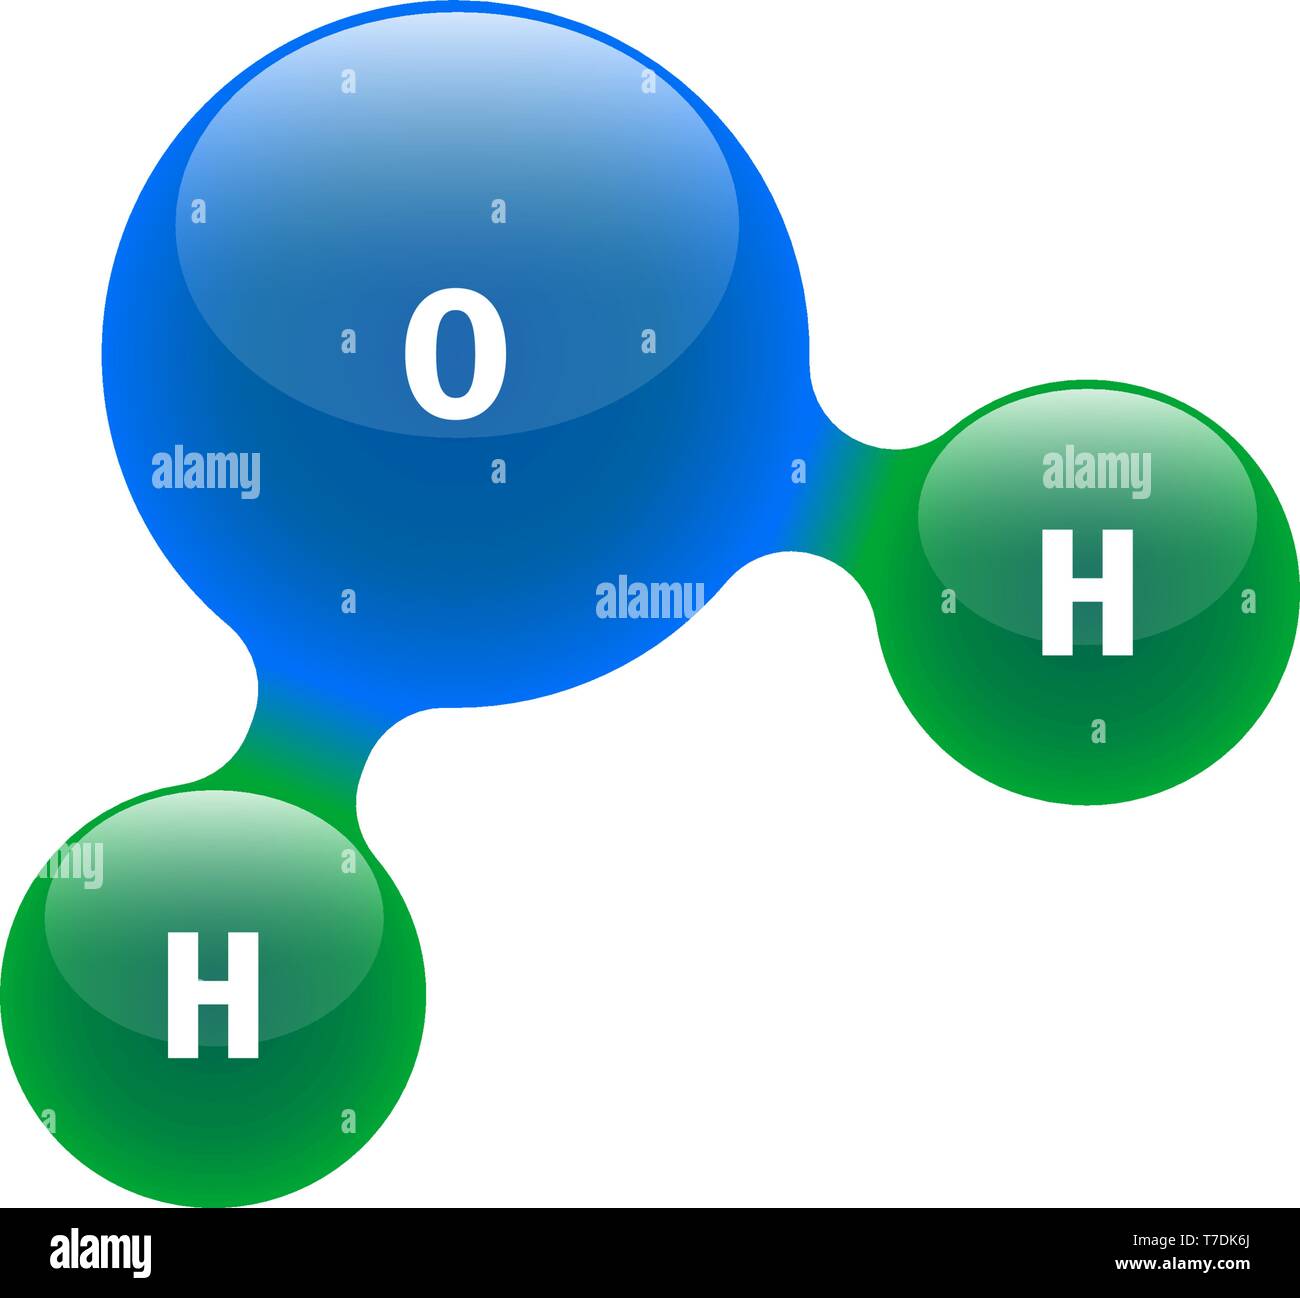 Chemie Modell von Molekül Wasser H2O wissenschaftliche Elemente. Integrierte Partikel Wasserstoff und Sauerstoff Natürliche anorganische Verbindung. 3D-Struktur Stock Vektor